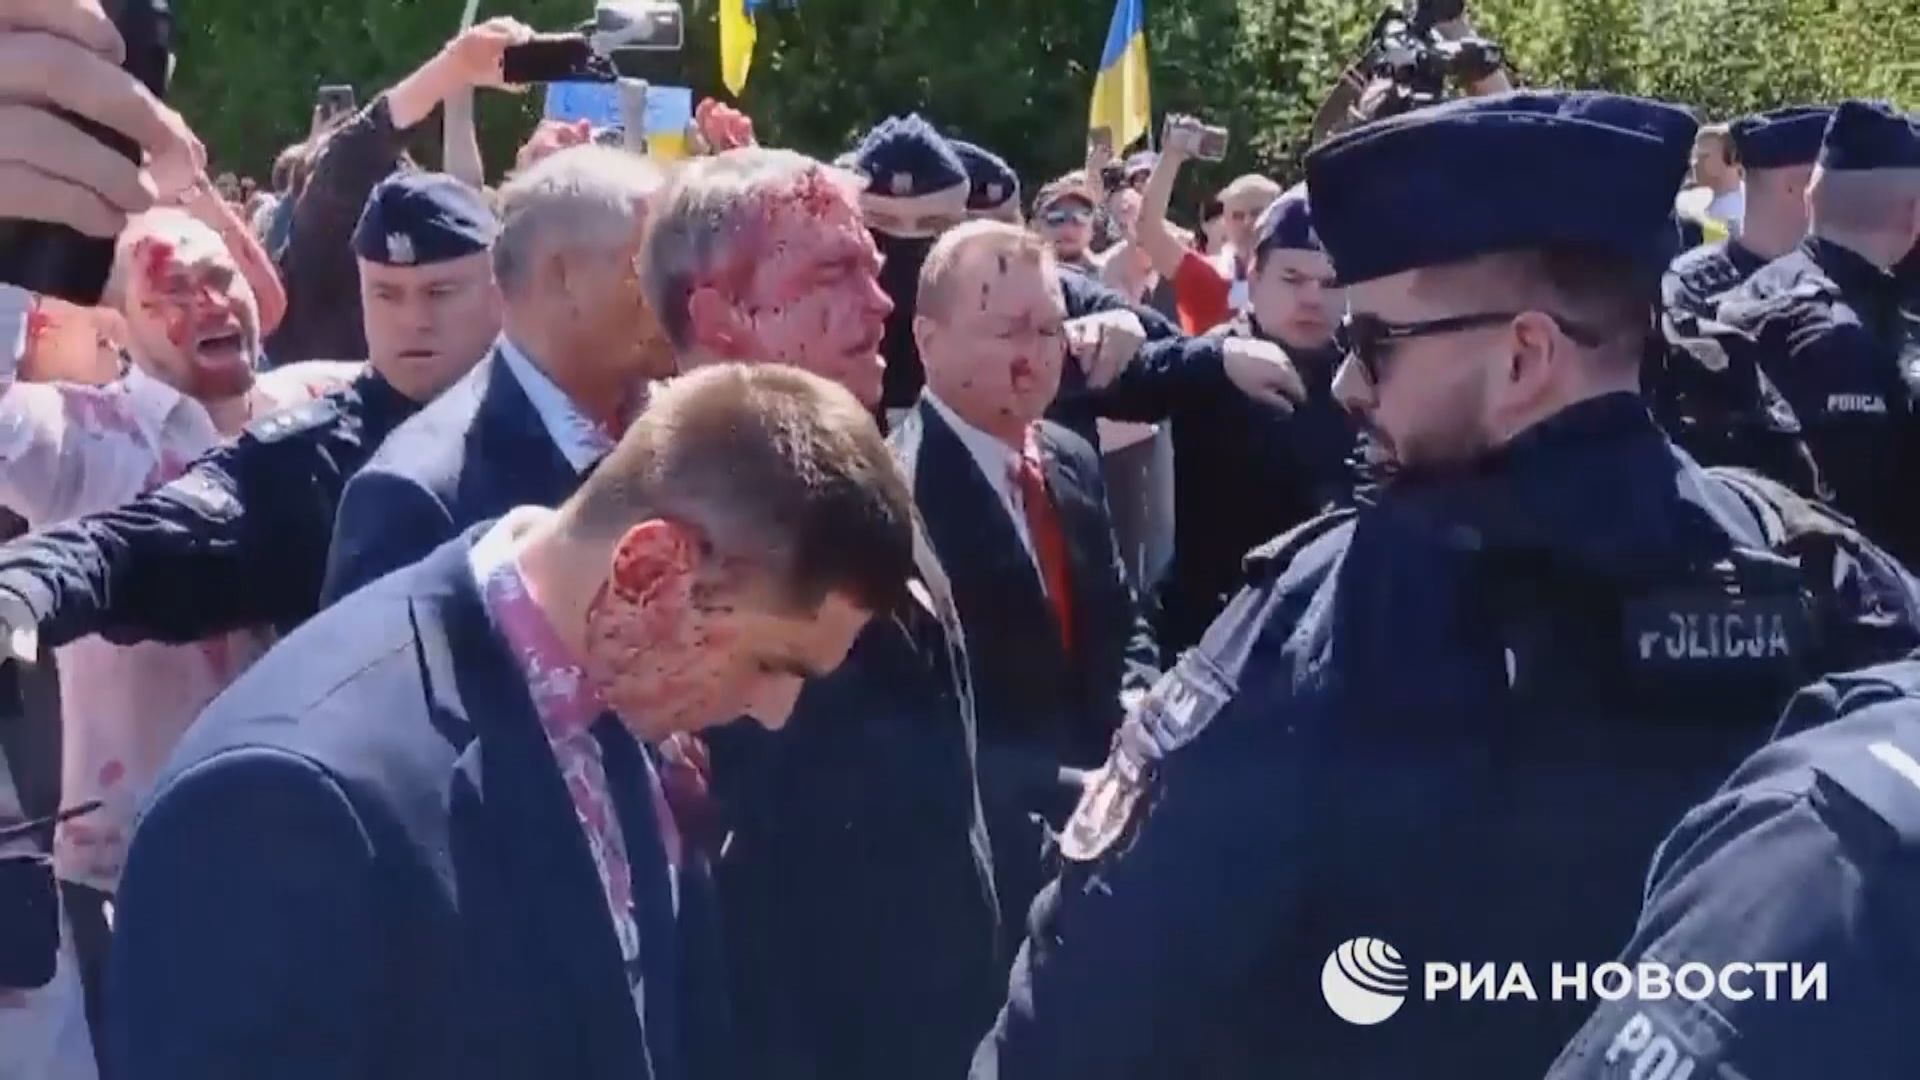 俄羅斯要求波蘭就駐波大使遭潑漆油道歉